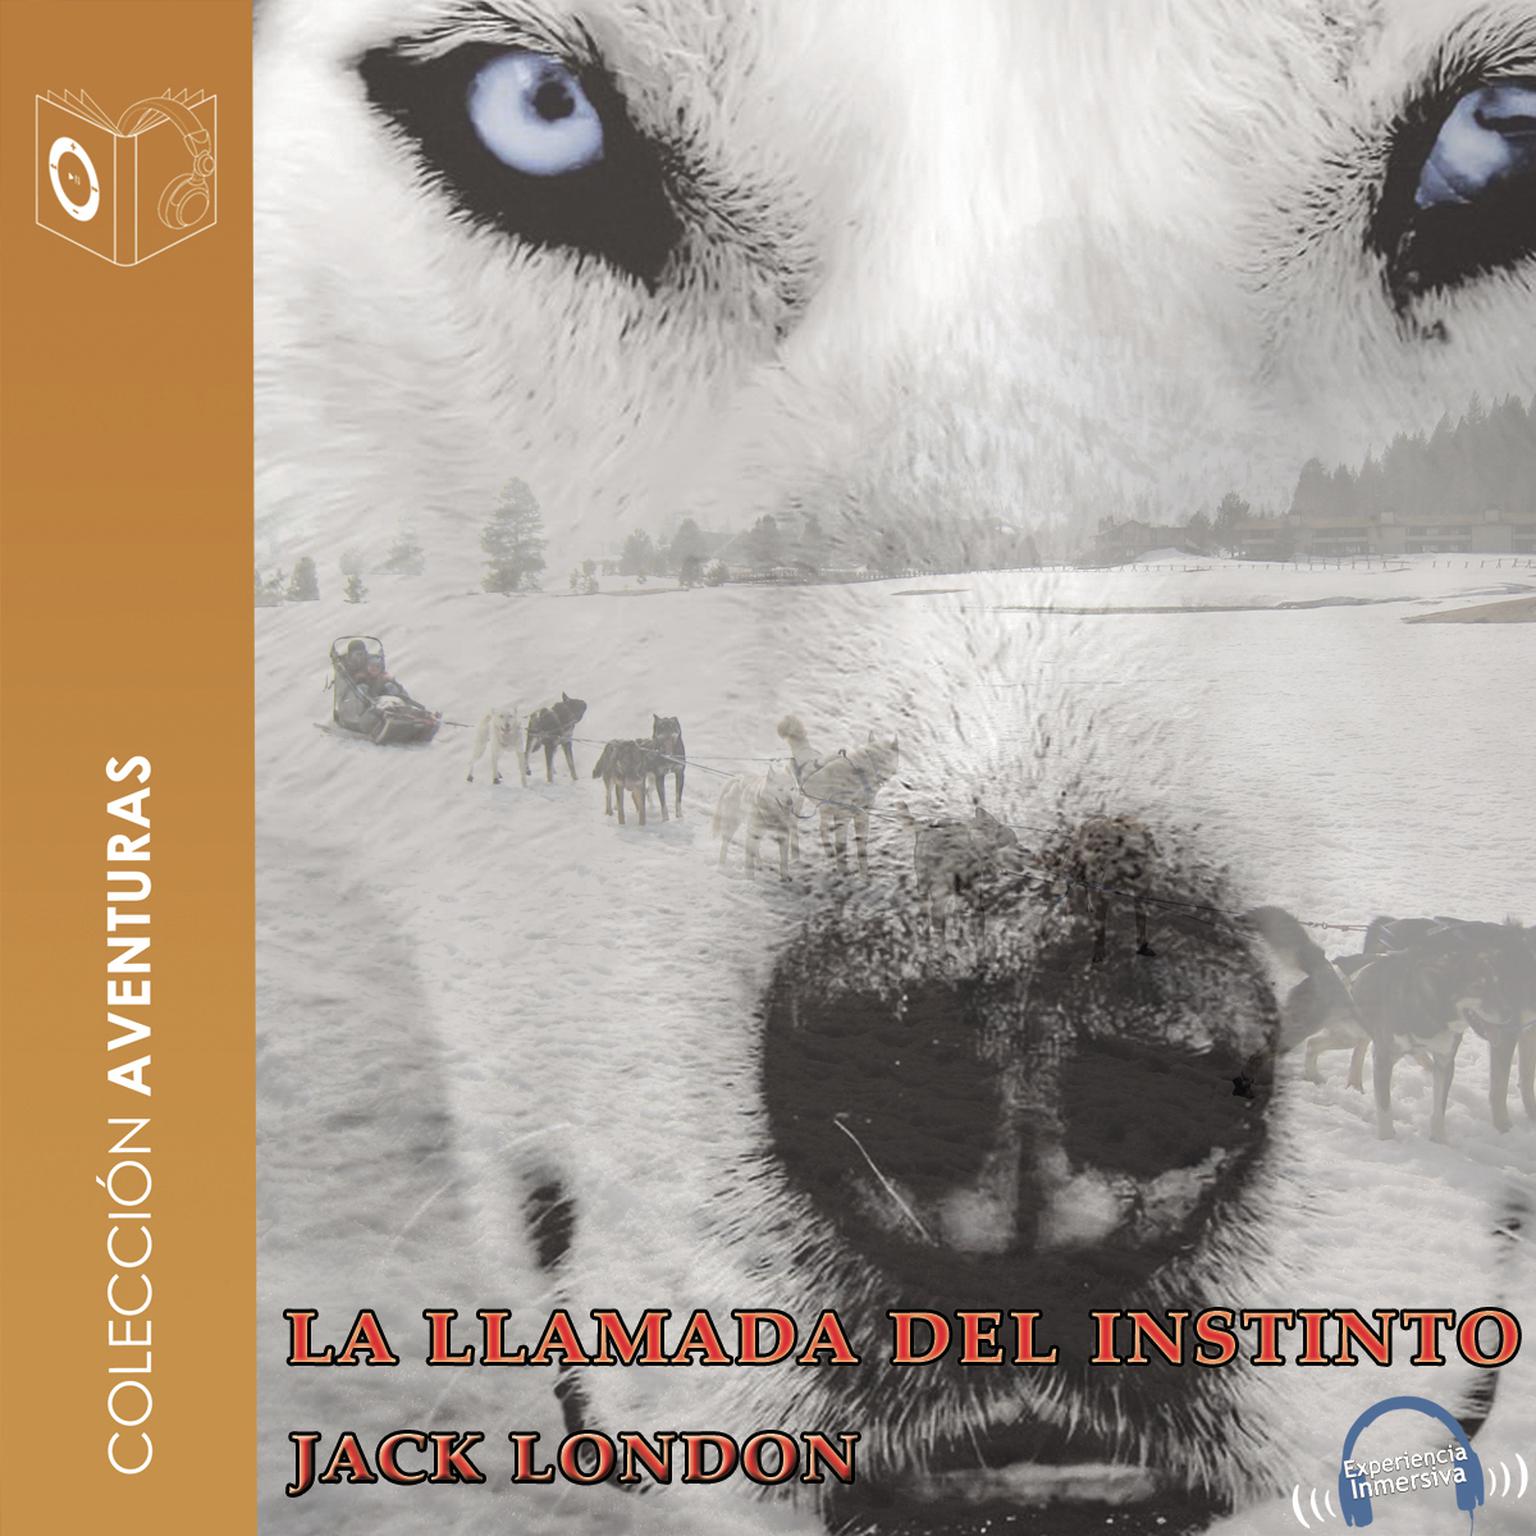 La llamada del instinto Audiobook, by Jack London